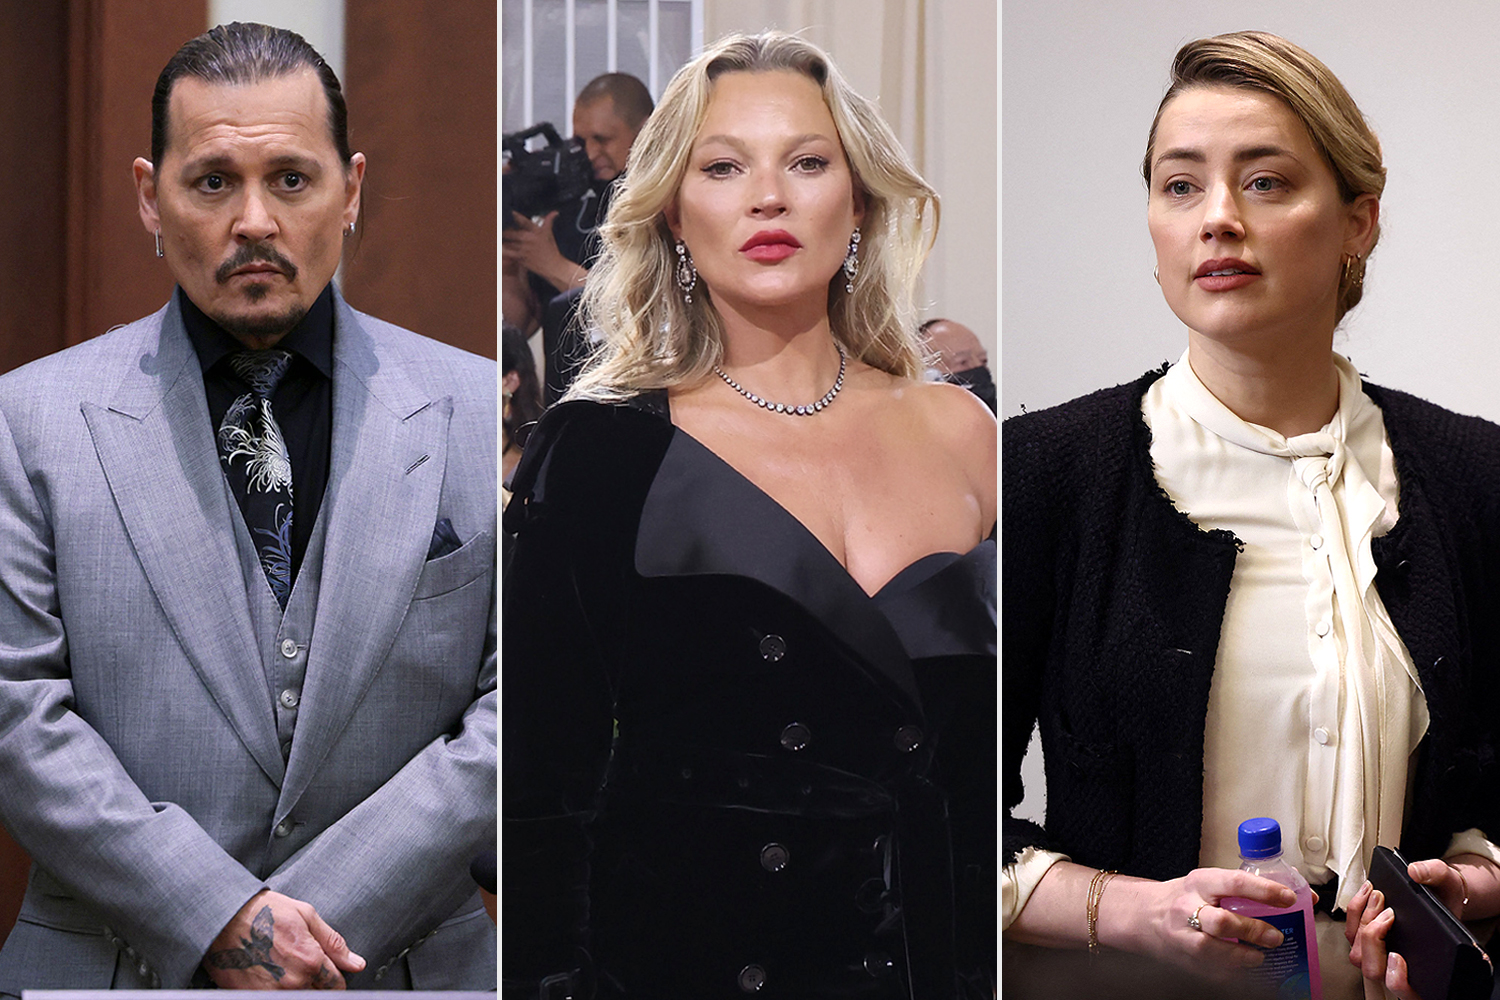 Războiul divelor în procesul lui Johnny Depp. Kate Moss o pune la punct pe Amber Heard